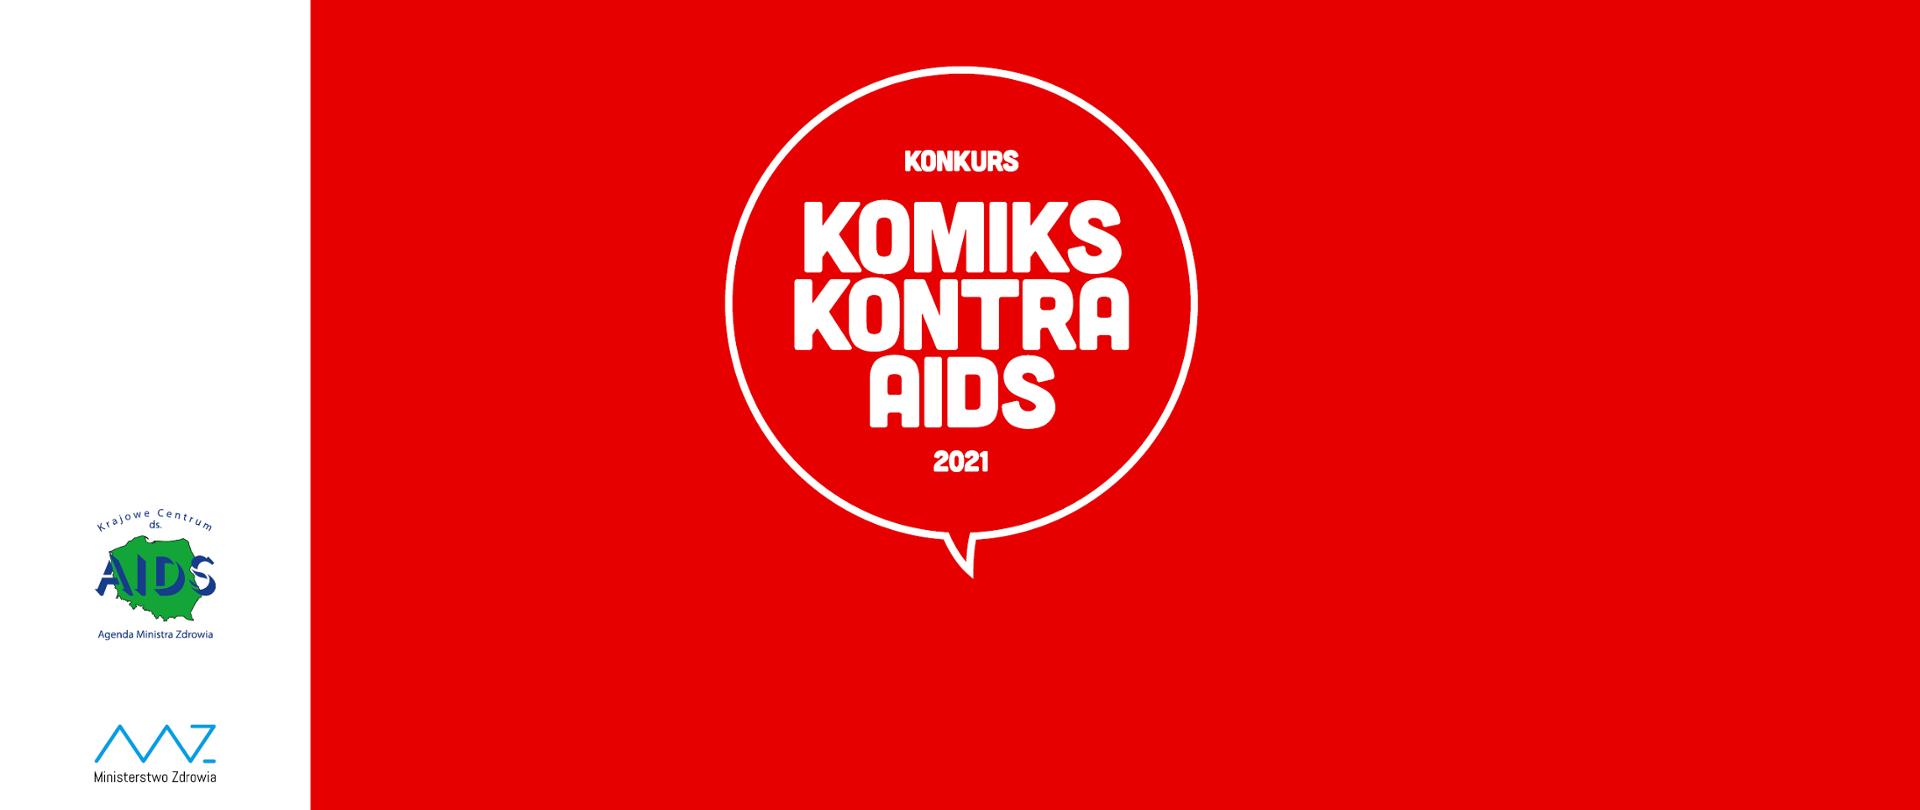 napis konkurs komiks kontra aids na czerwonym tle, logo KC ds.AIDS